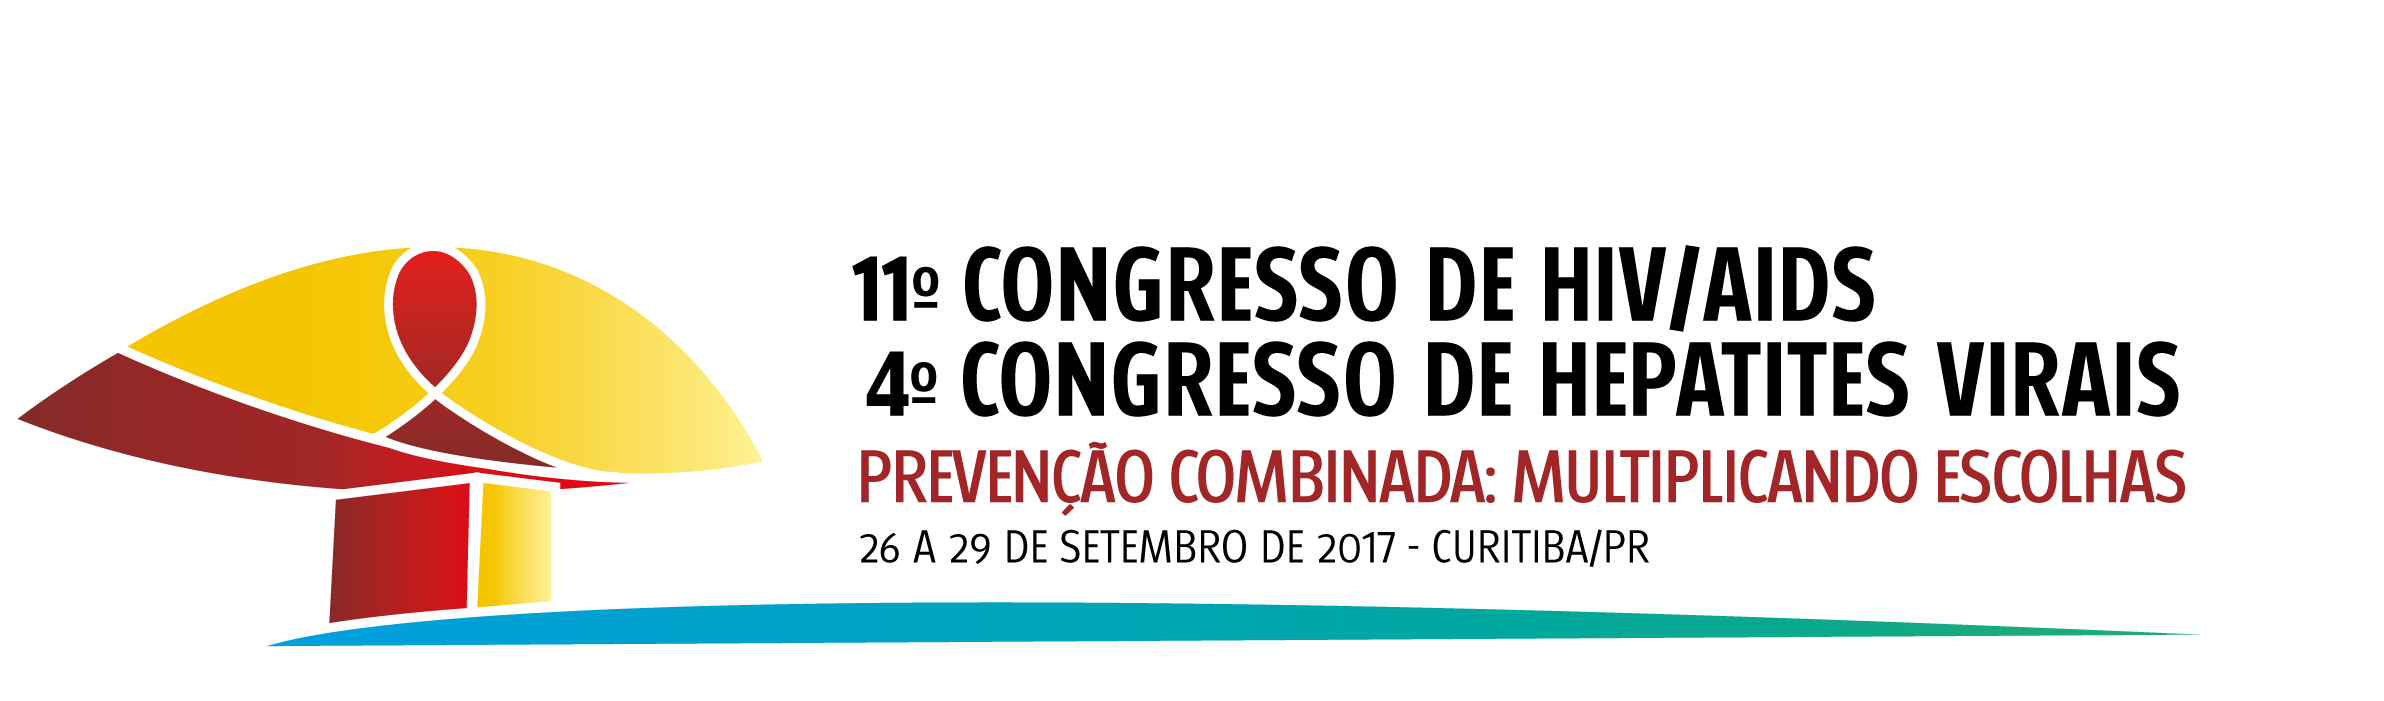 Logo do 1º Congresso de HIV/Aids e 4º Congresso de Hepatites Virais, formado pela ilustração do monumento do olho, de Niemayer, na cor amarela, com um detalhe em vermelho ao centro e a base do olho também em vermelho. Ao lado direito da ilustração, há o nome do congresso escrito em preto, mais abaixo o subtítulo do evento Prevenção Combinada: Multiplicando Escolhas escrito em vermelho, e mais abaixo o texto em preto 26 a 26 de setembro de 2017 - Curitiba/PR.